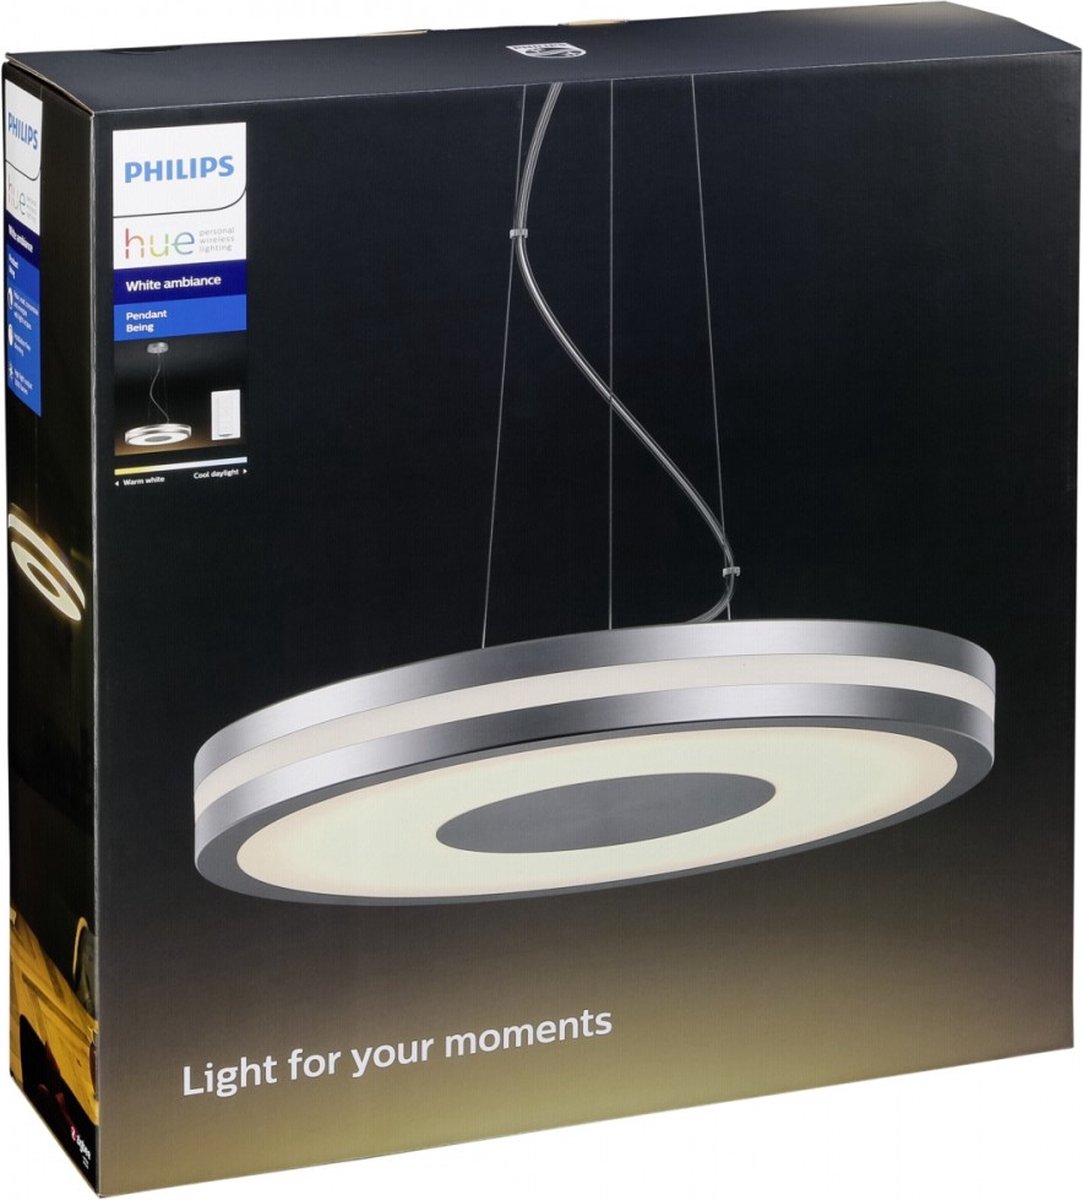 Zichtbaar Onaangenaam spreker Philips Hue Being hanglamp - warm tot koelwit licht - aluminium - 1 dimmer  switch | bol.com